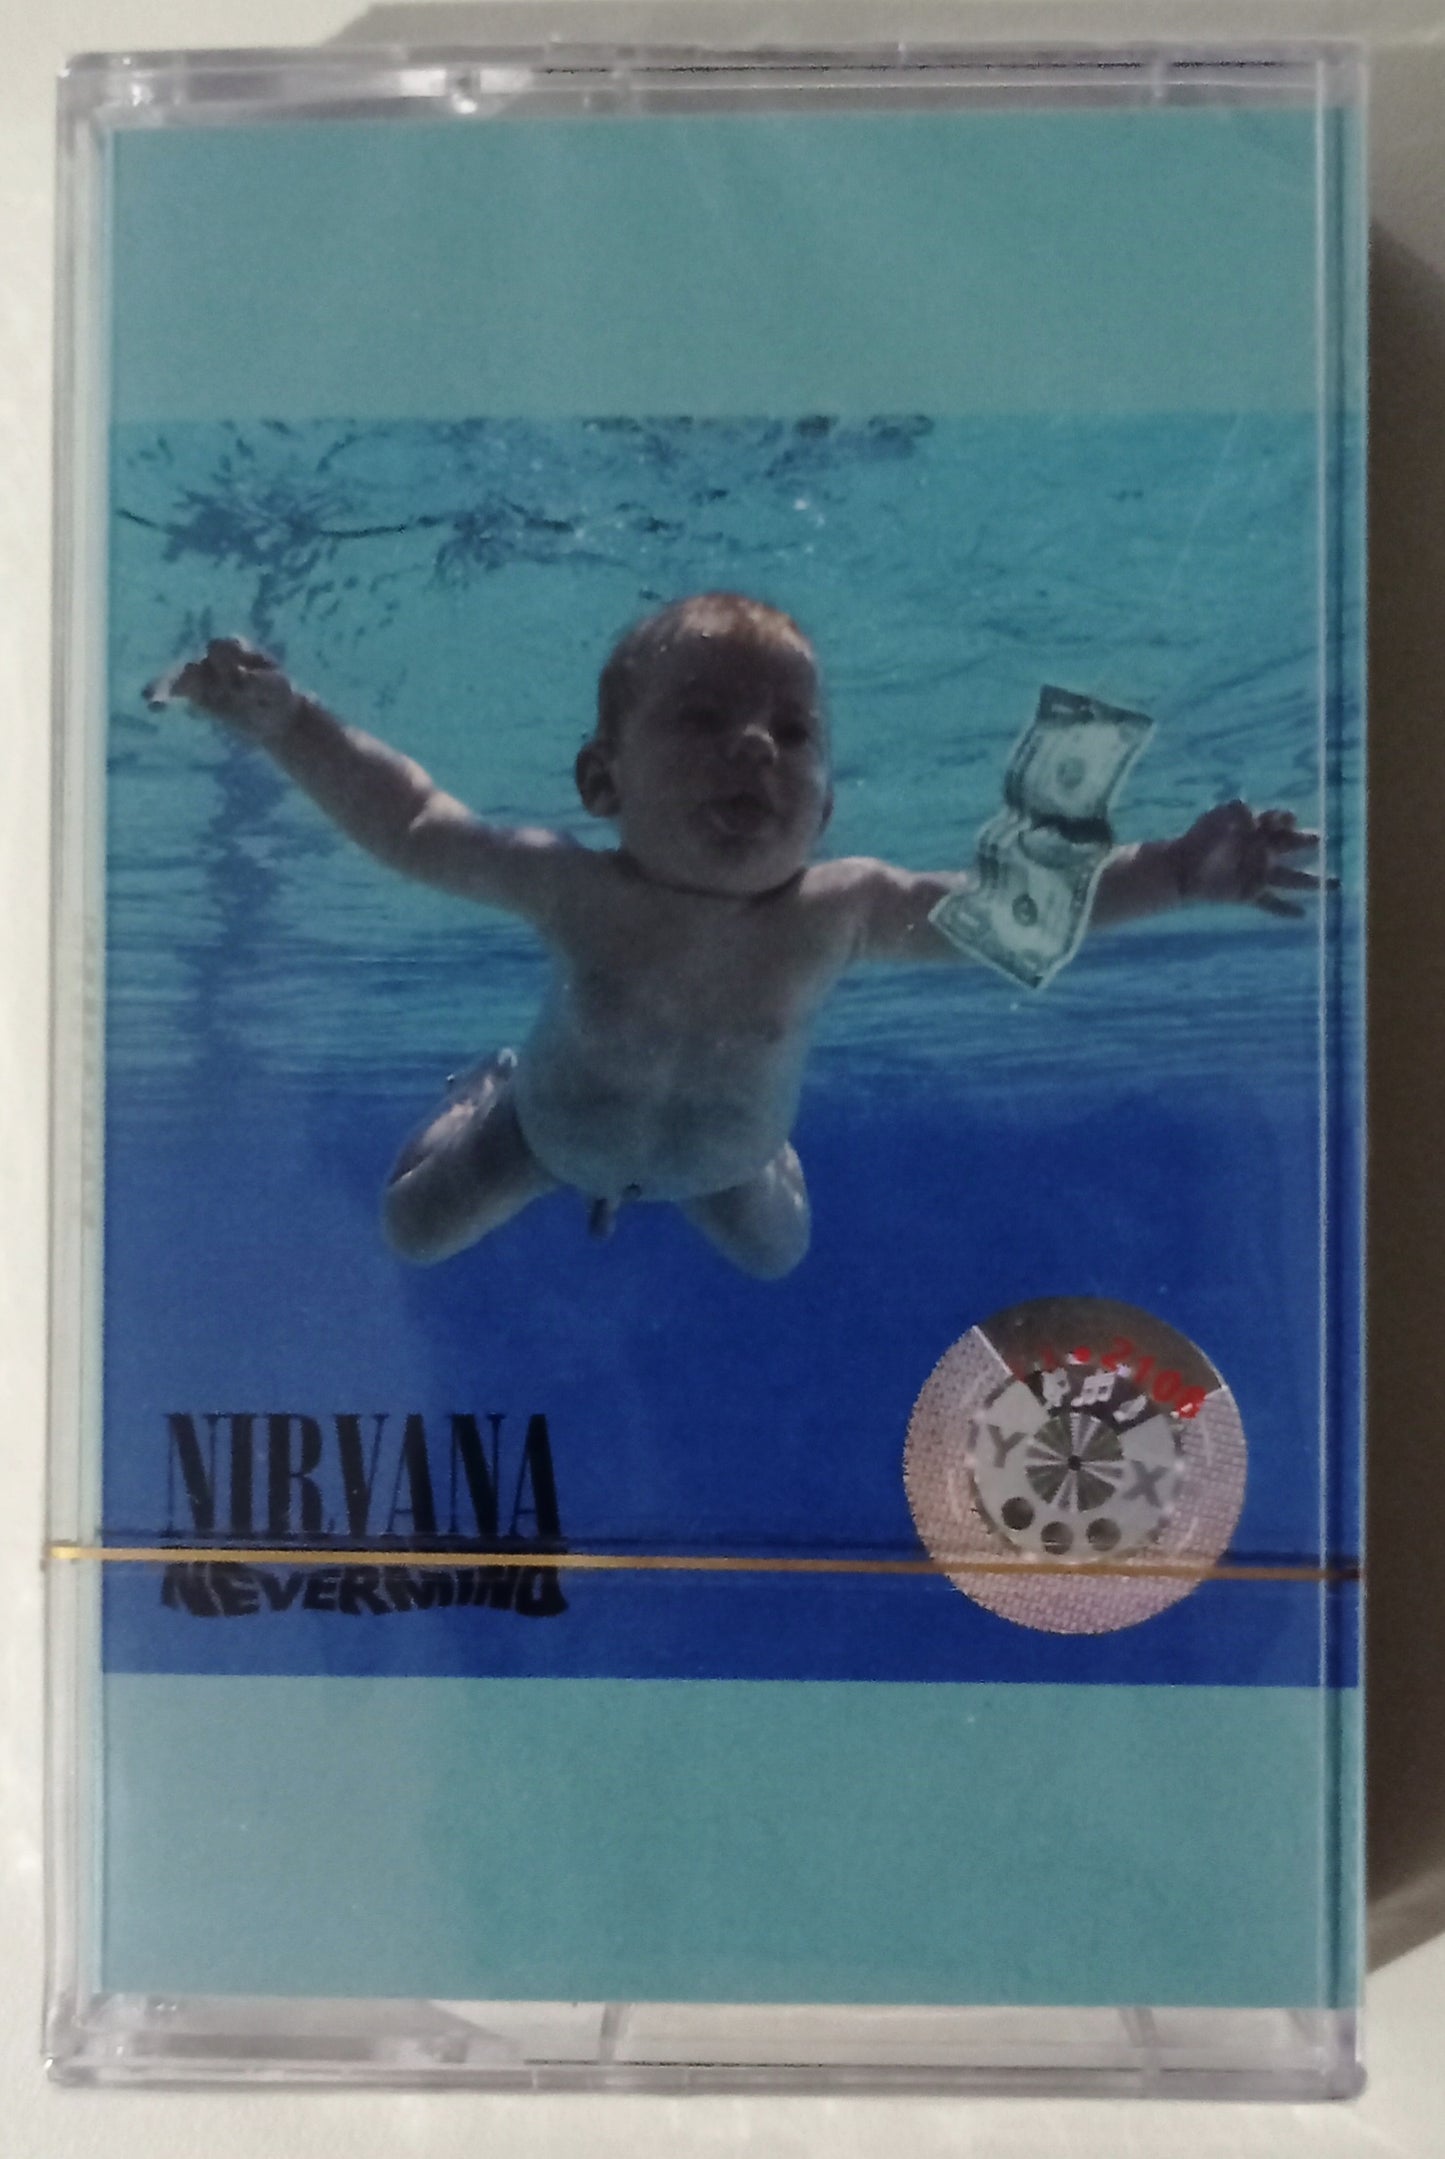 Nirvana - Nevermind (Cassete - Importado China - LACRADO)